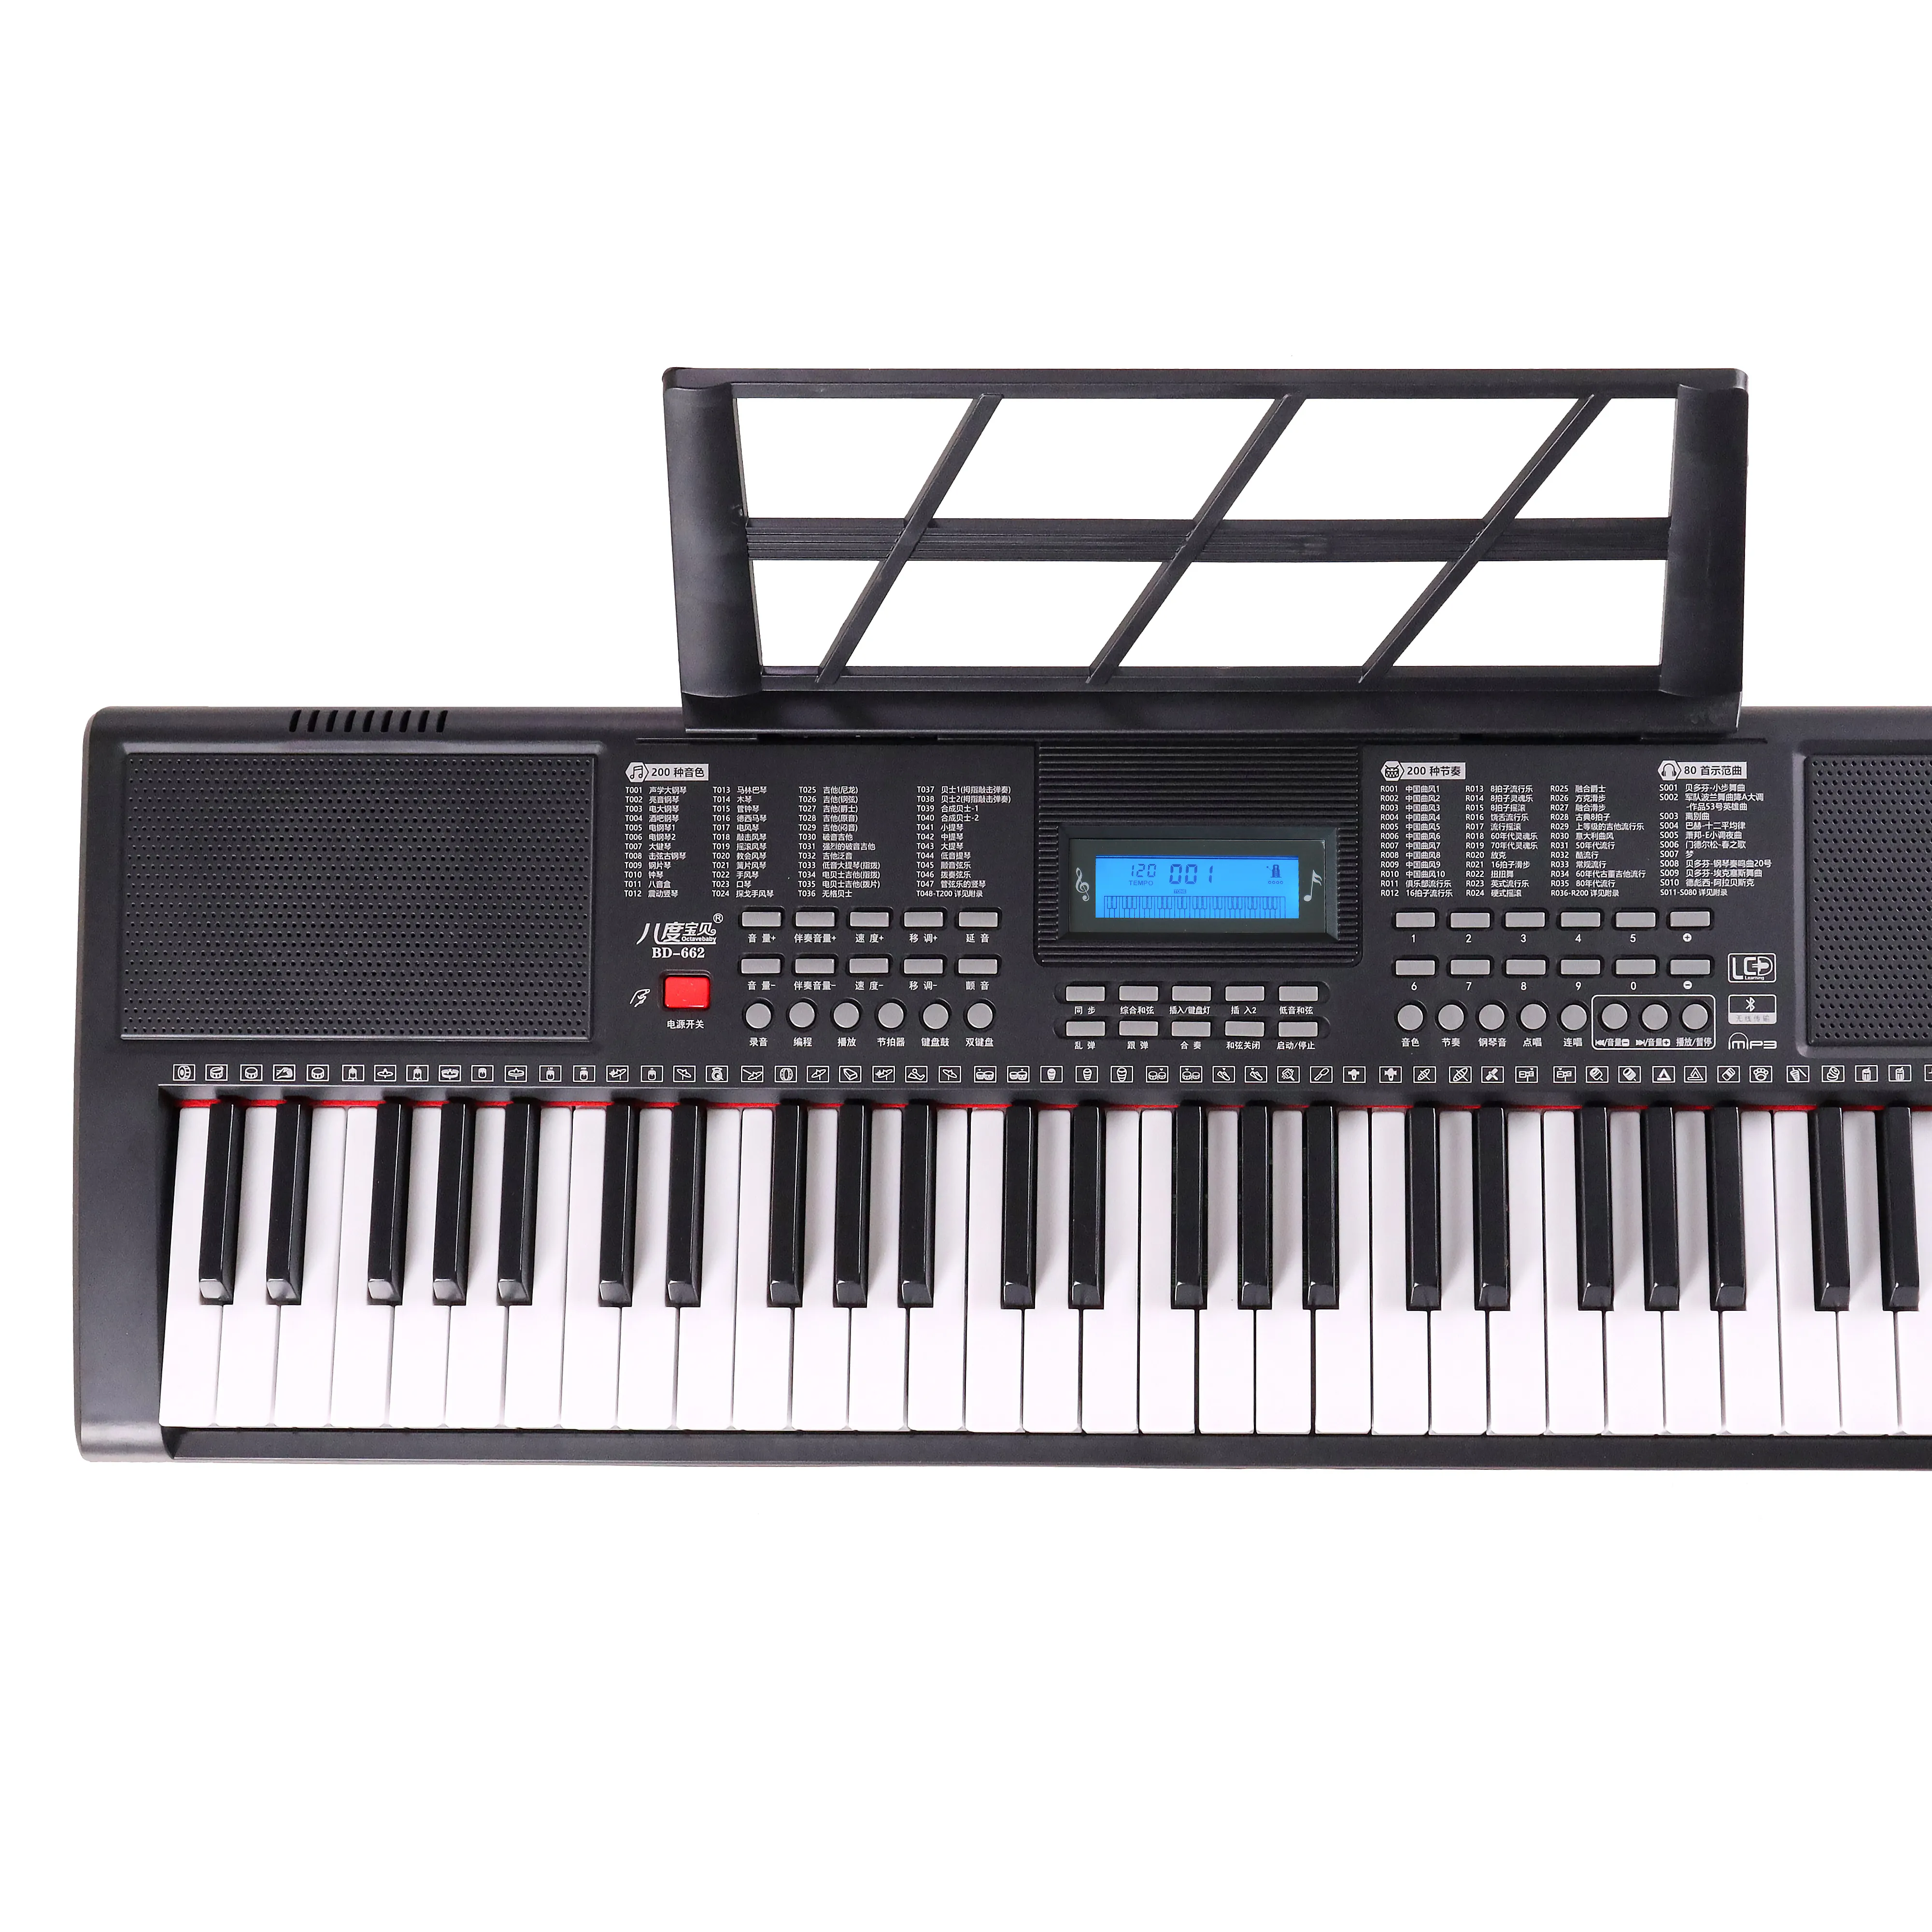 Hoge Kwaliteit Mp3 Onderwijs Muziekinstrumenten Semi-Professioneel Piano Orgel Keyboard Met 61 Toetsen